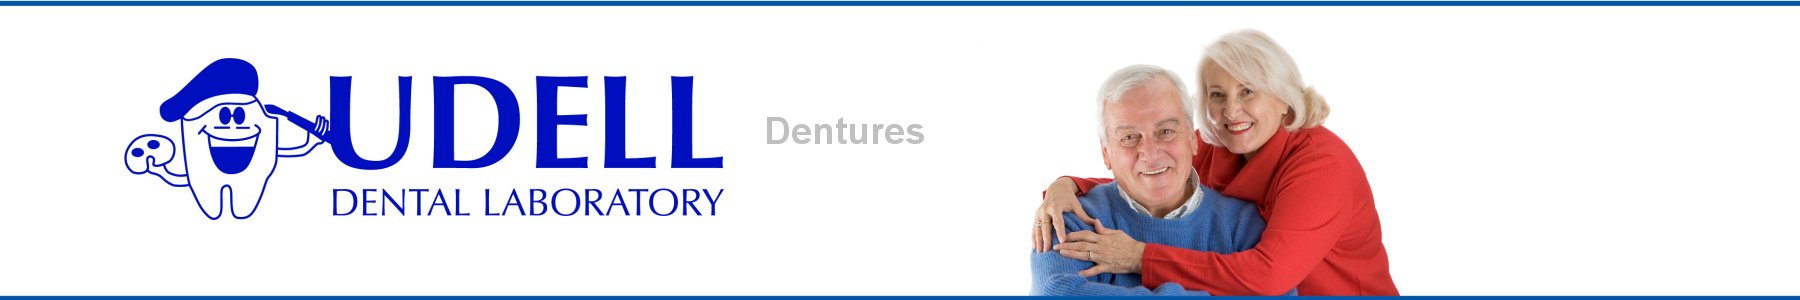 Udell Dental Laboratory Dentures